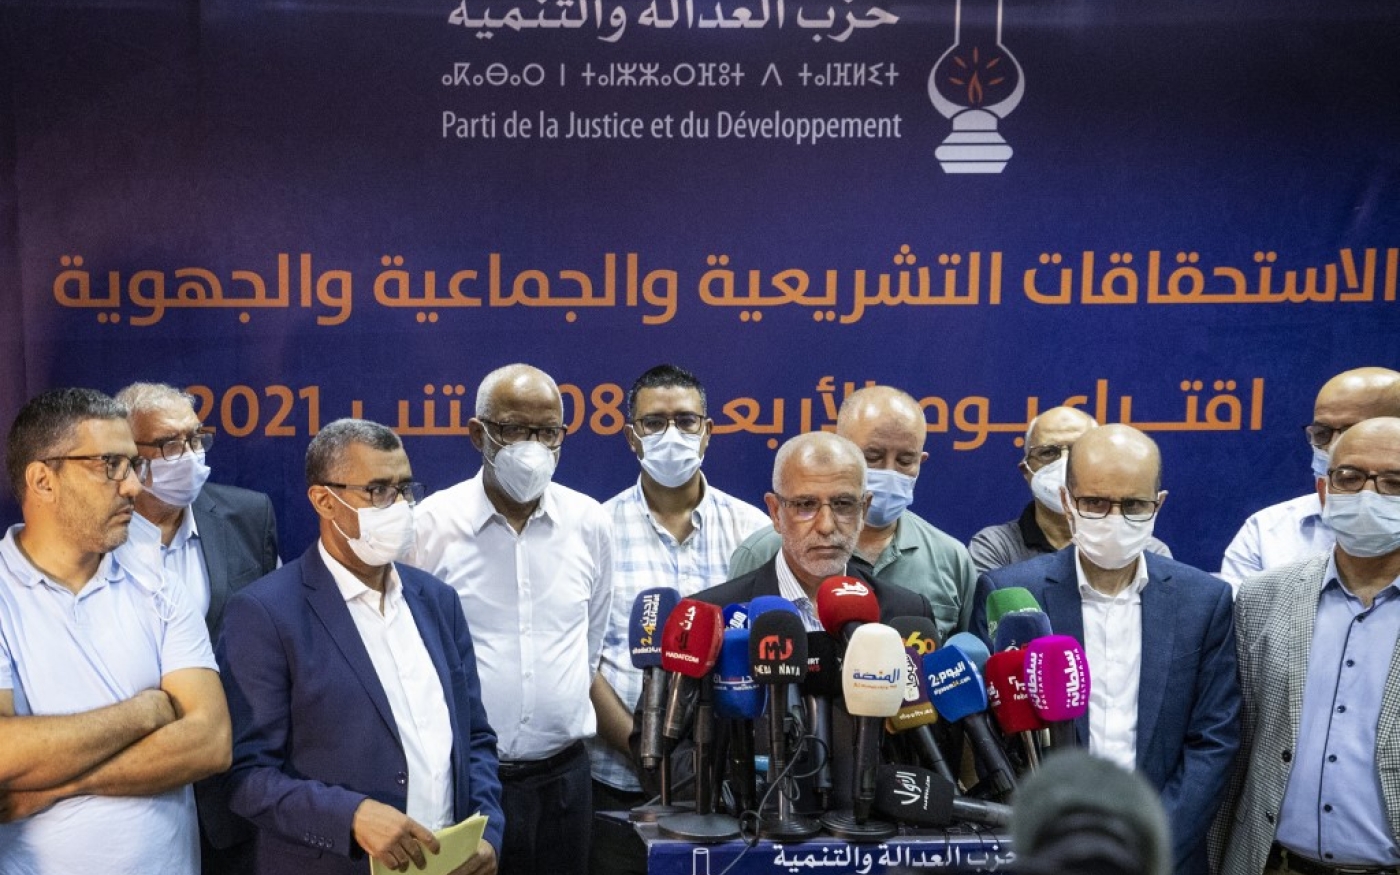 Conférence de presse du PJD pour annoncer la démission de son président Saâdeddine el-Othmani et des membres du secrétariat général, le 9 septembre 2021 à Rabat (AFP/Fadel Senna)